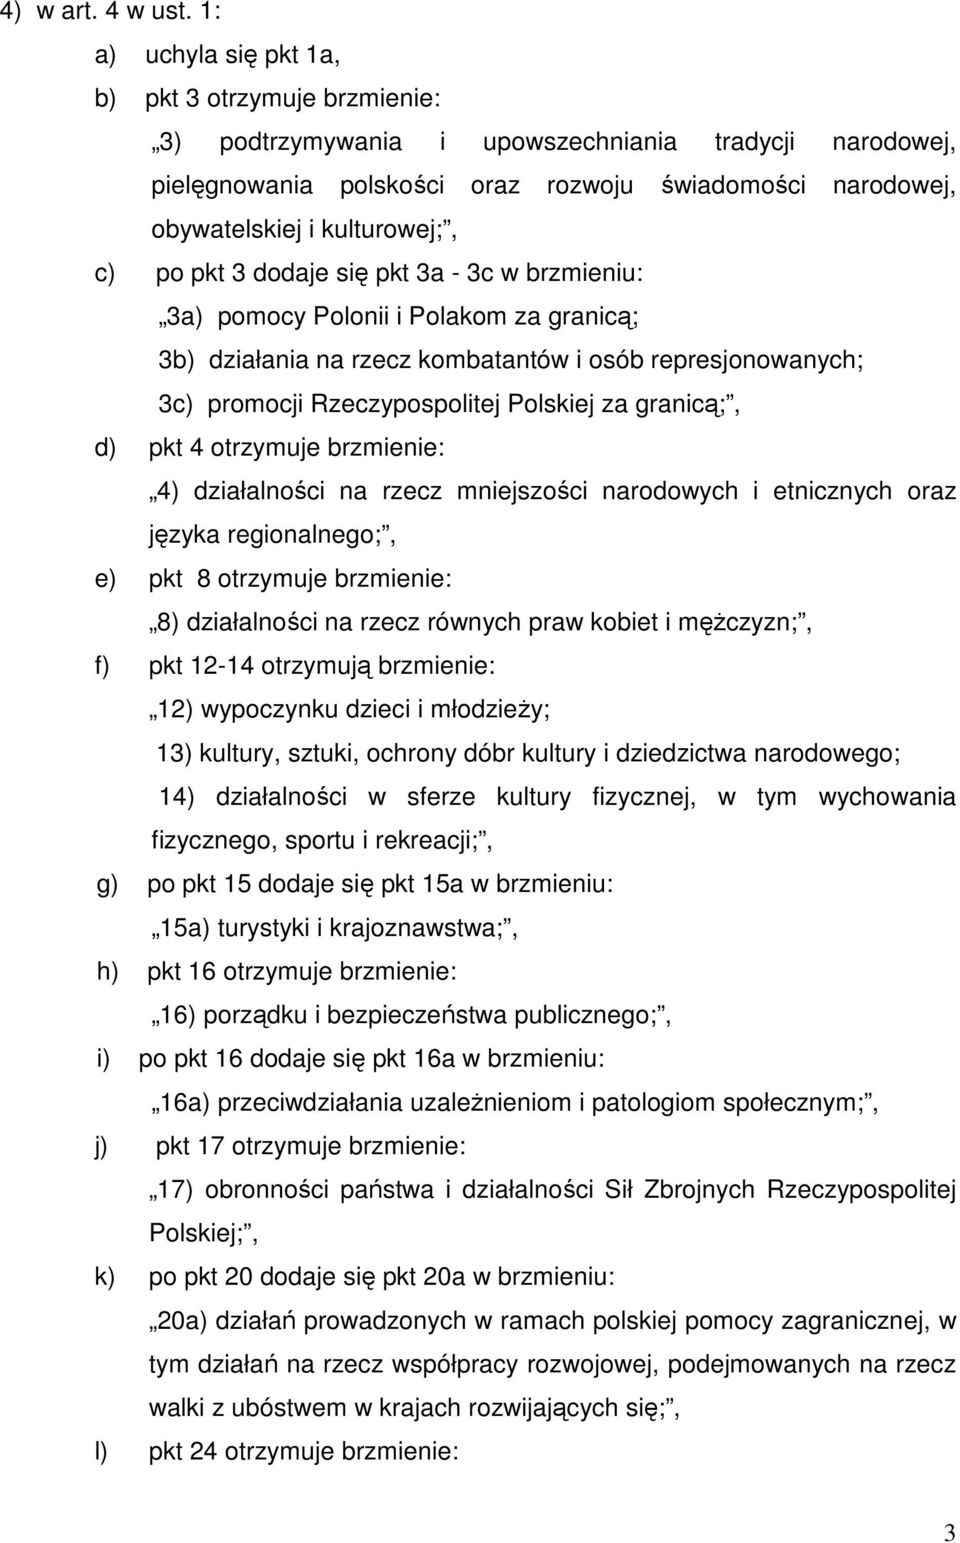 c) po pkt 3 dodaje się pkt 3a - 3c w brzmieniu: 3a) pomocy Polonii i Polakom za granicą; 3b) działania na rzecz kombatantów i osób represjonowanych; 3c) promocji Rzeczypospolitej Polskiej za